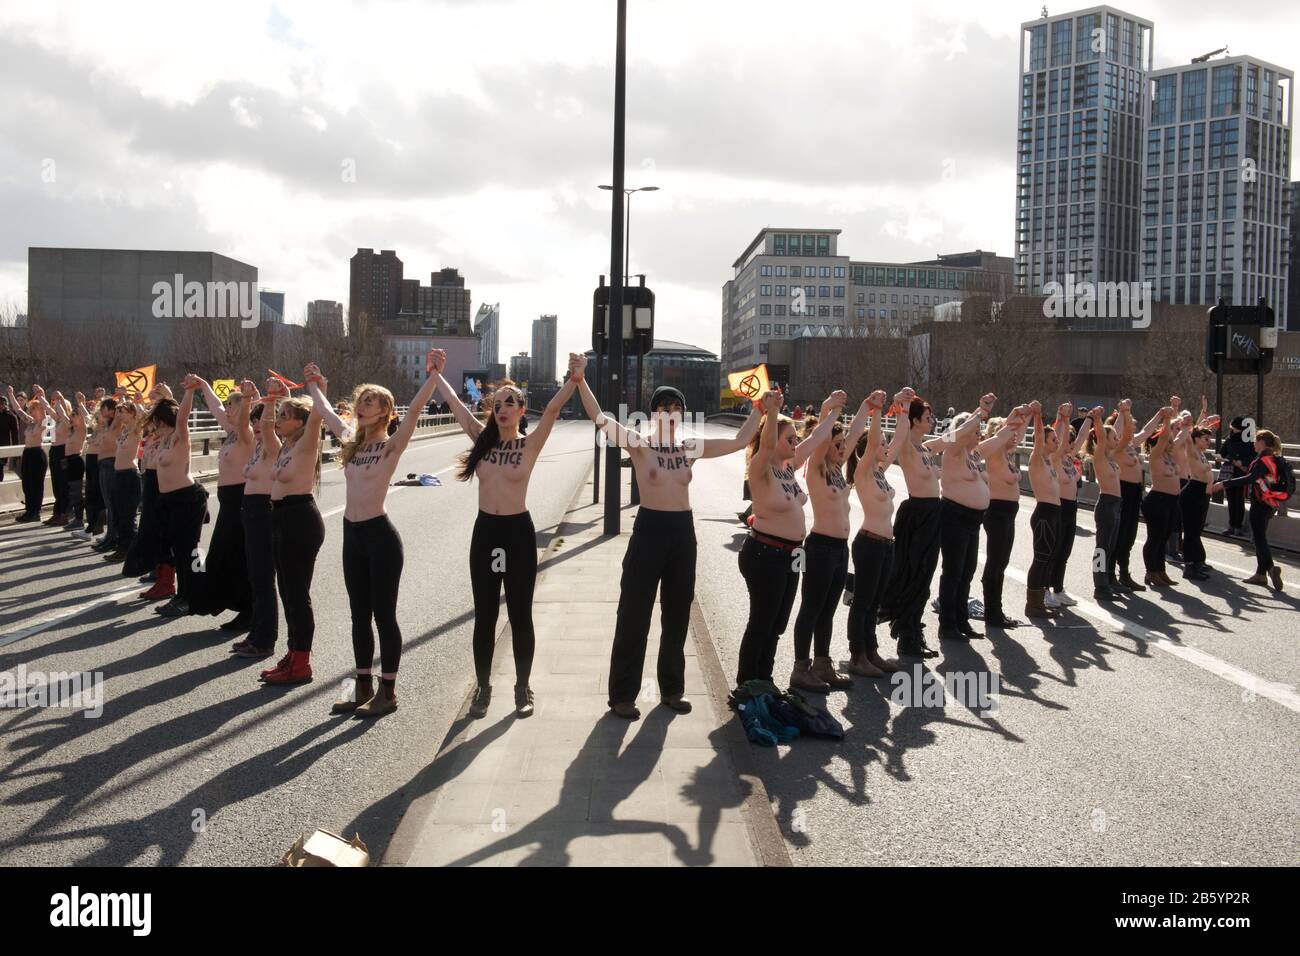 Londres, Reino Unido. 08 de marzo de 2020. 08.03.20 - un grupo de 31 mujeres formaron una cadena a través del puente de Waterloo para 'destacar el impacto desproporcionado del clima y la emergencia ecológica en las mujeres' crédito: Gareth Morris/Alamy Live News Foto de stock